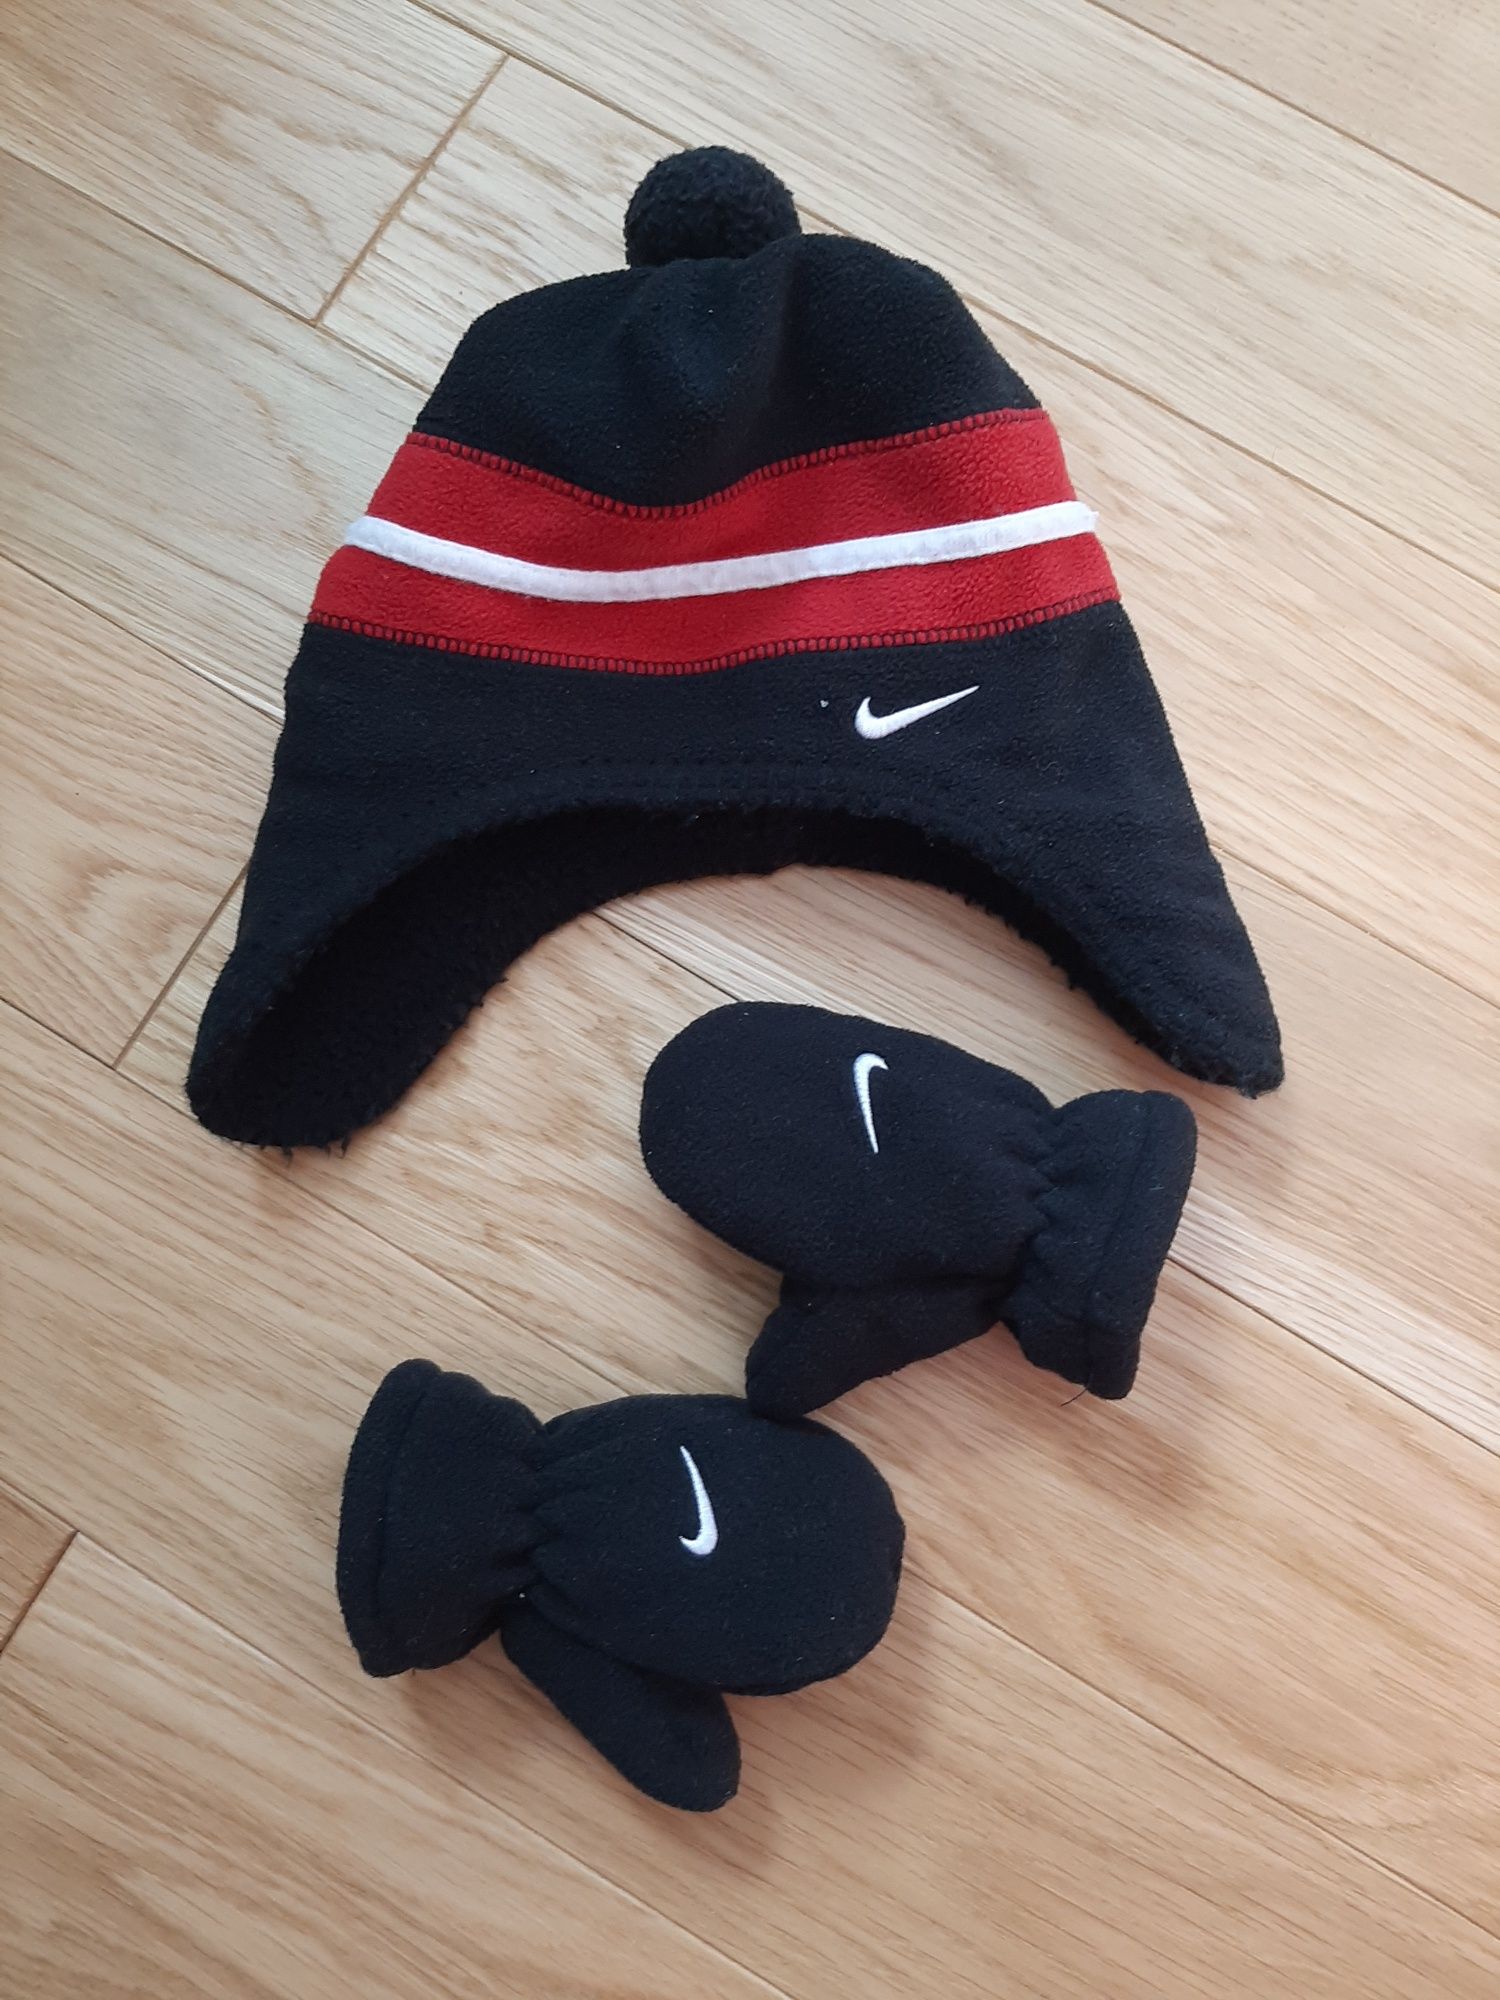 Czarna czarno czerwona zimowa czapka Nike 68 74 rozmiar 6 12 miesięcy